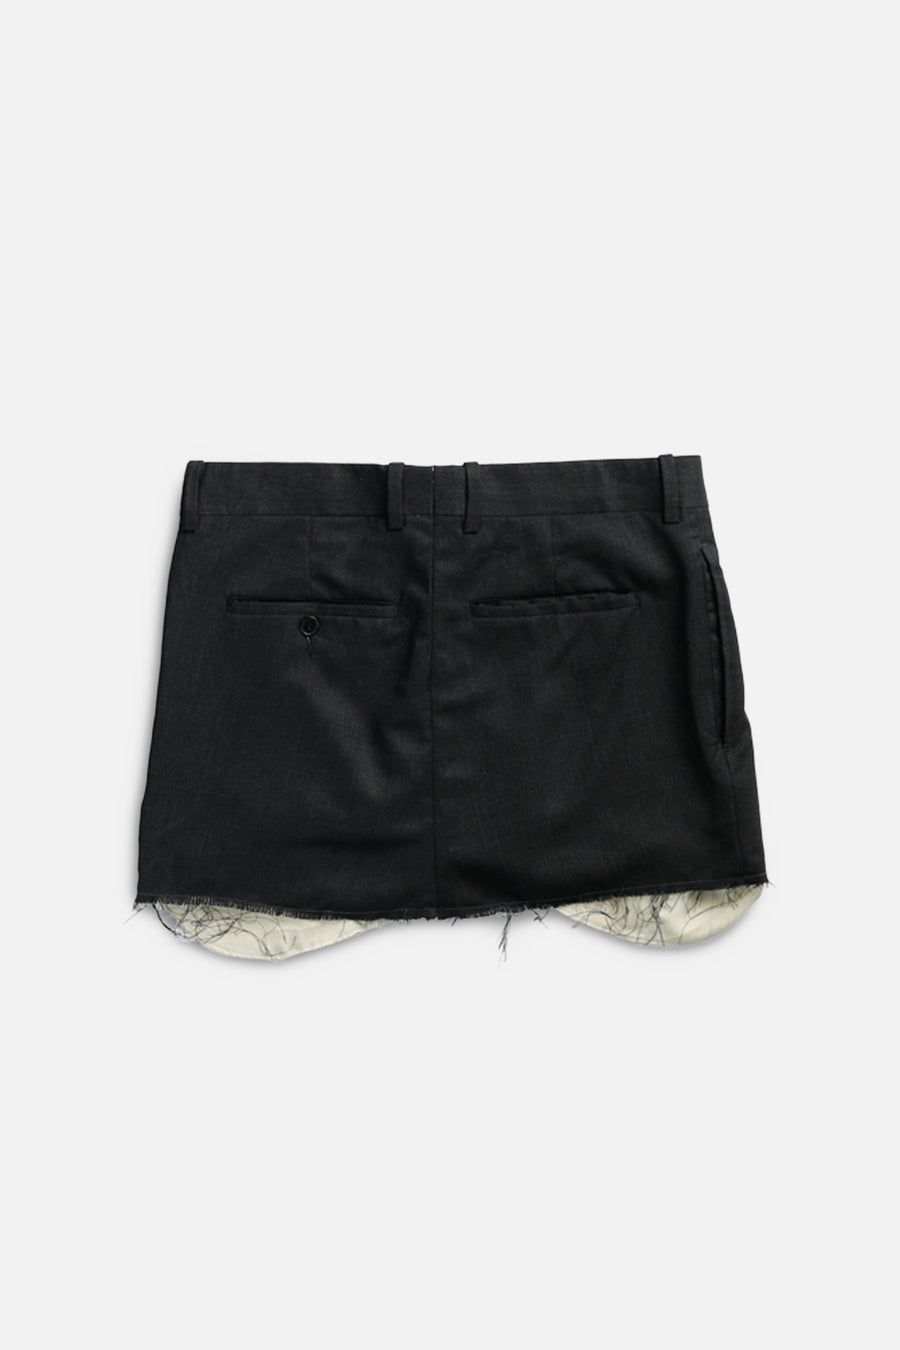 Rework Trouser Skirt - S